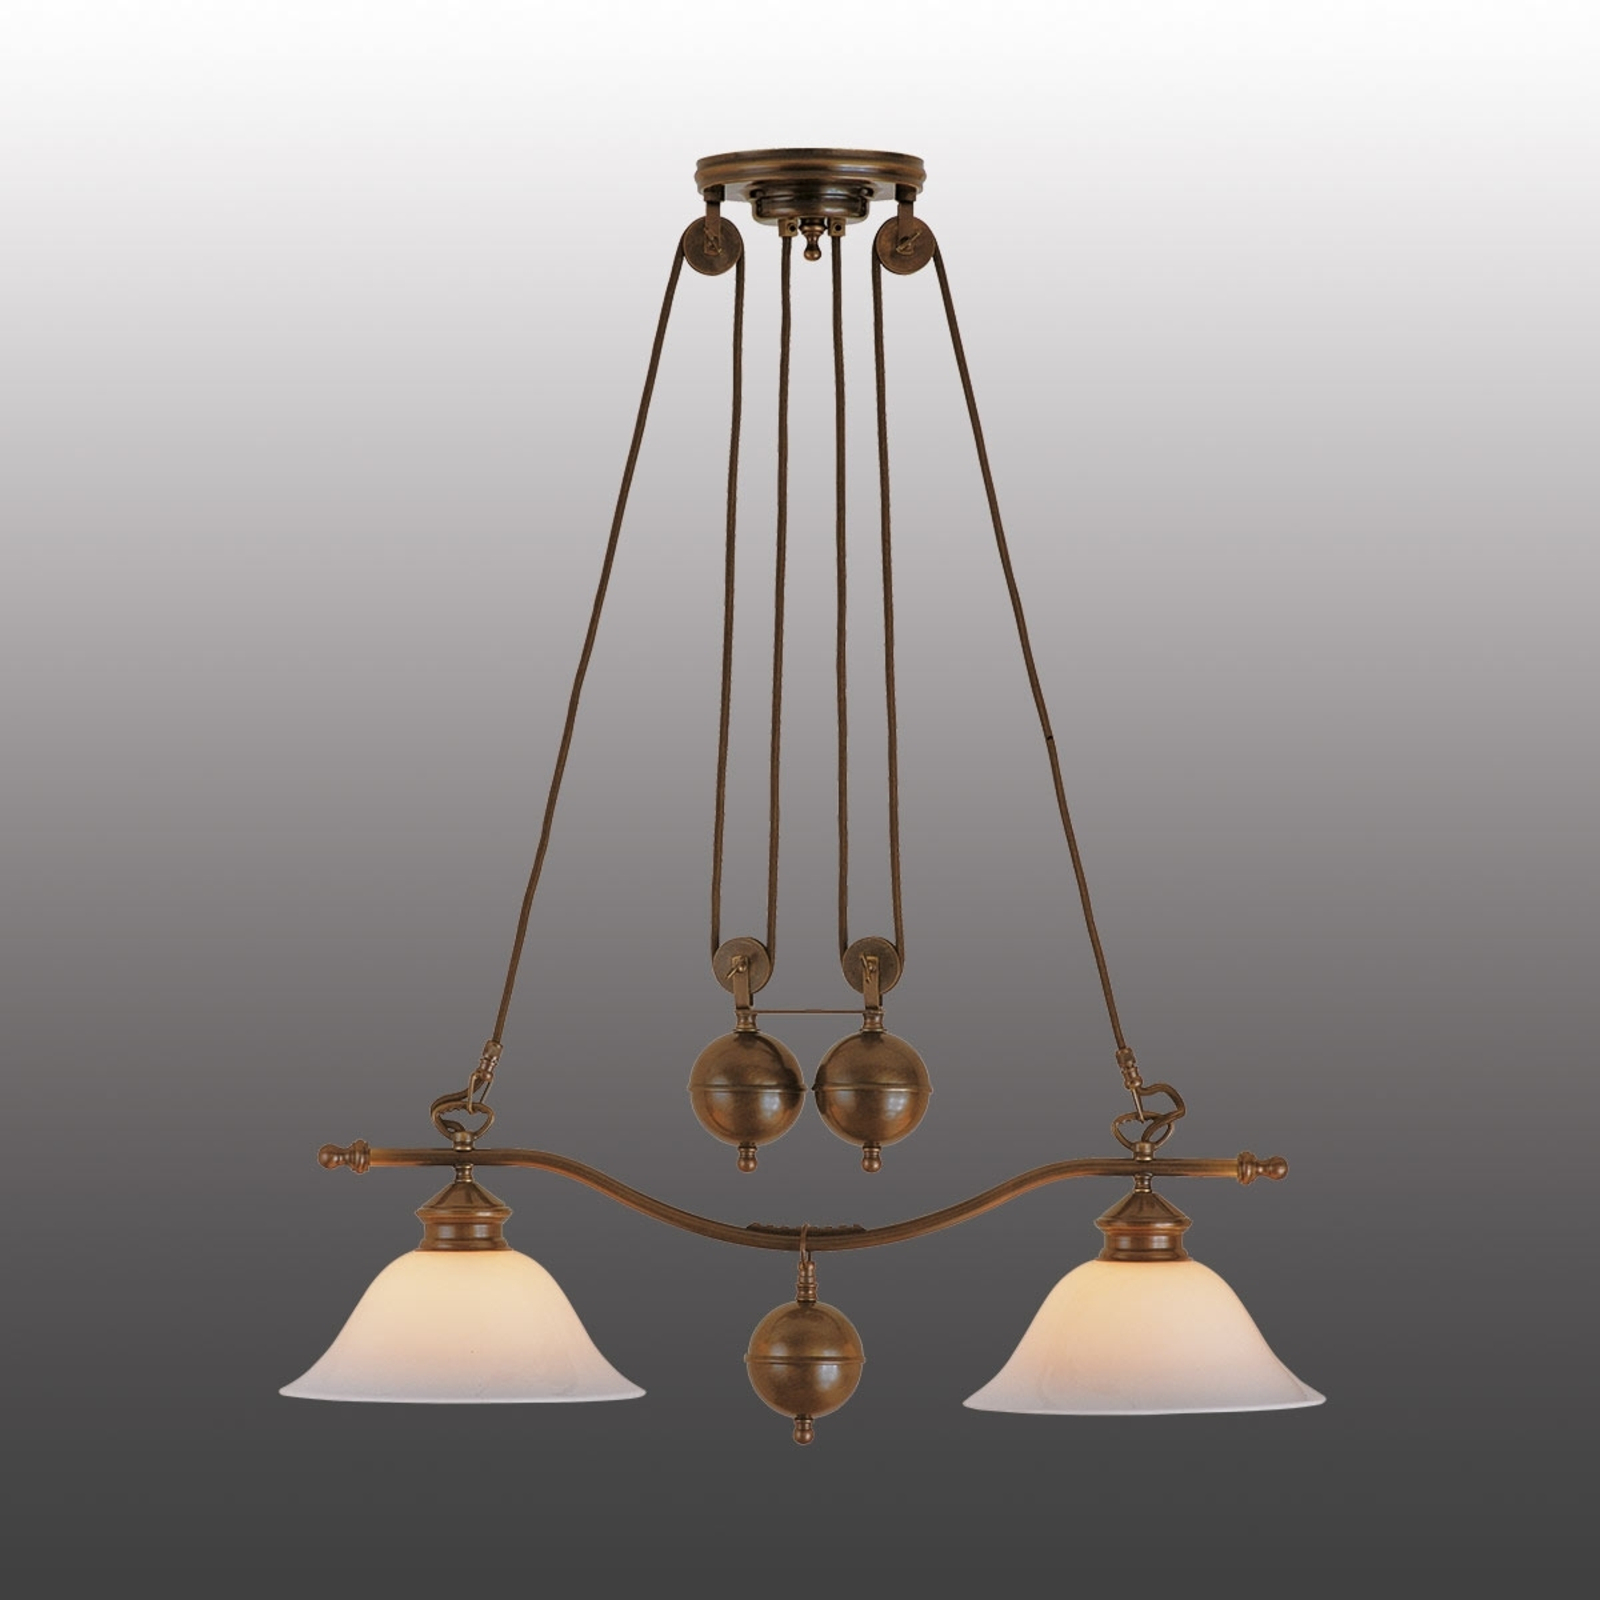 Anno 1900 hængelampe med to pærer